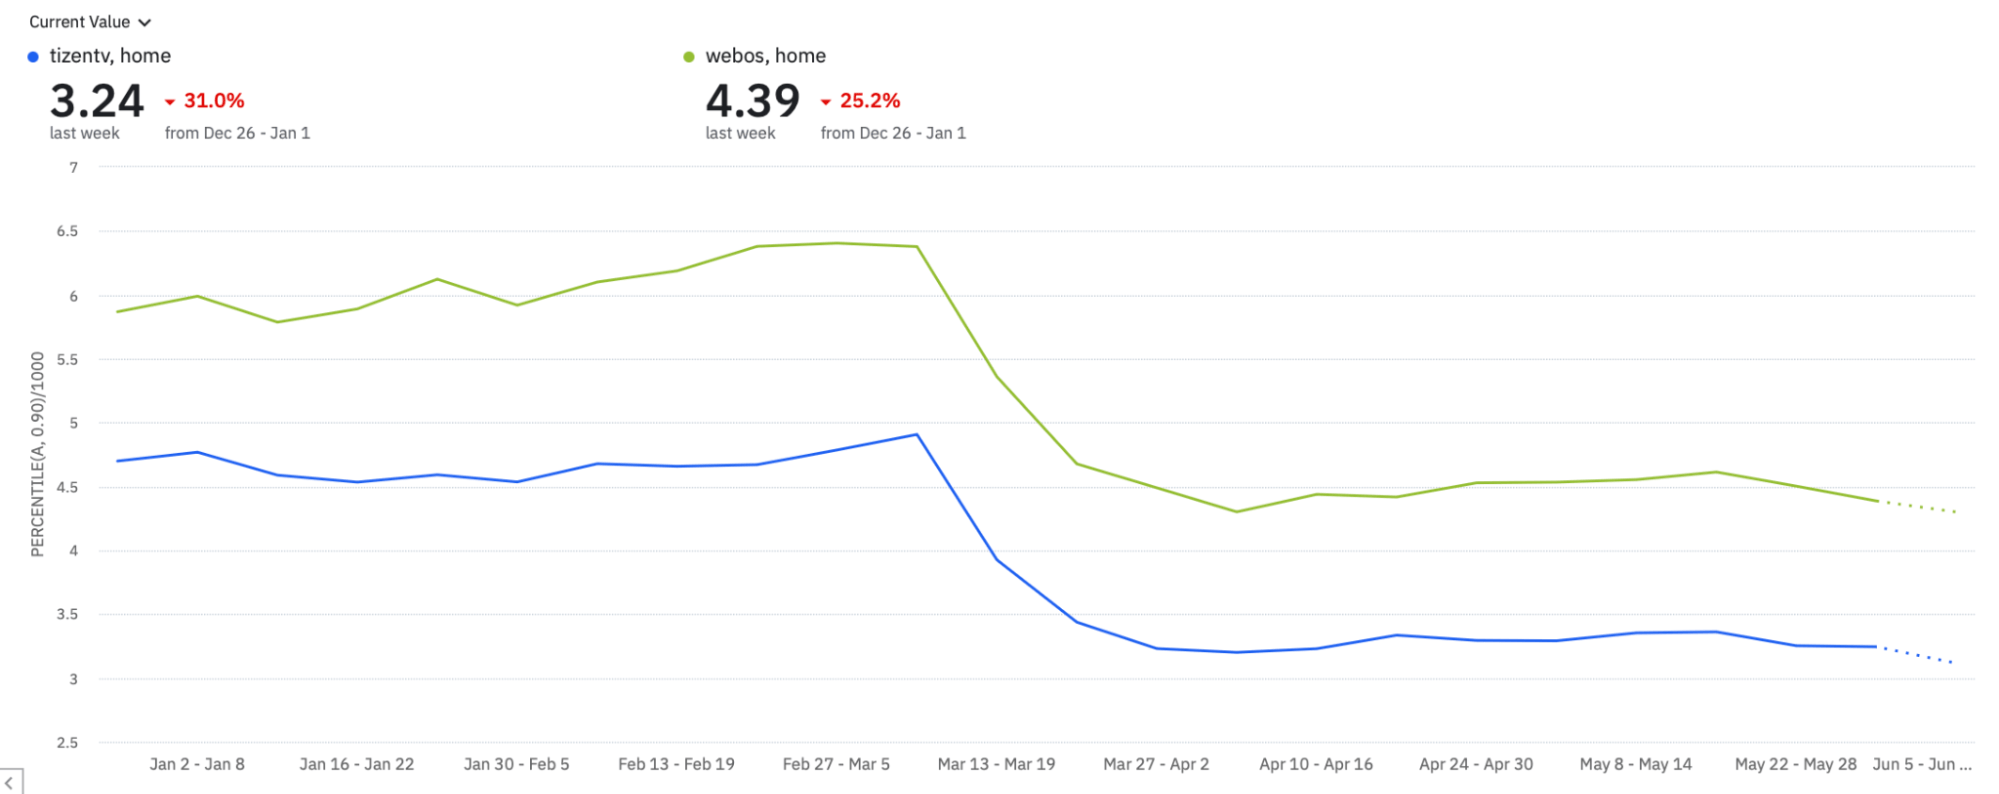 tizentv と webos の両方のページ レンダリング時間のカスタム指標の時系列は、3 月 13 日から 3 月 19 日までの期間でそれぞれ 31% と 25.2% 減少しています。